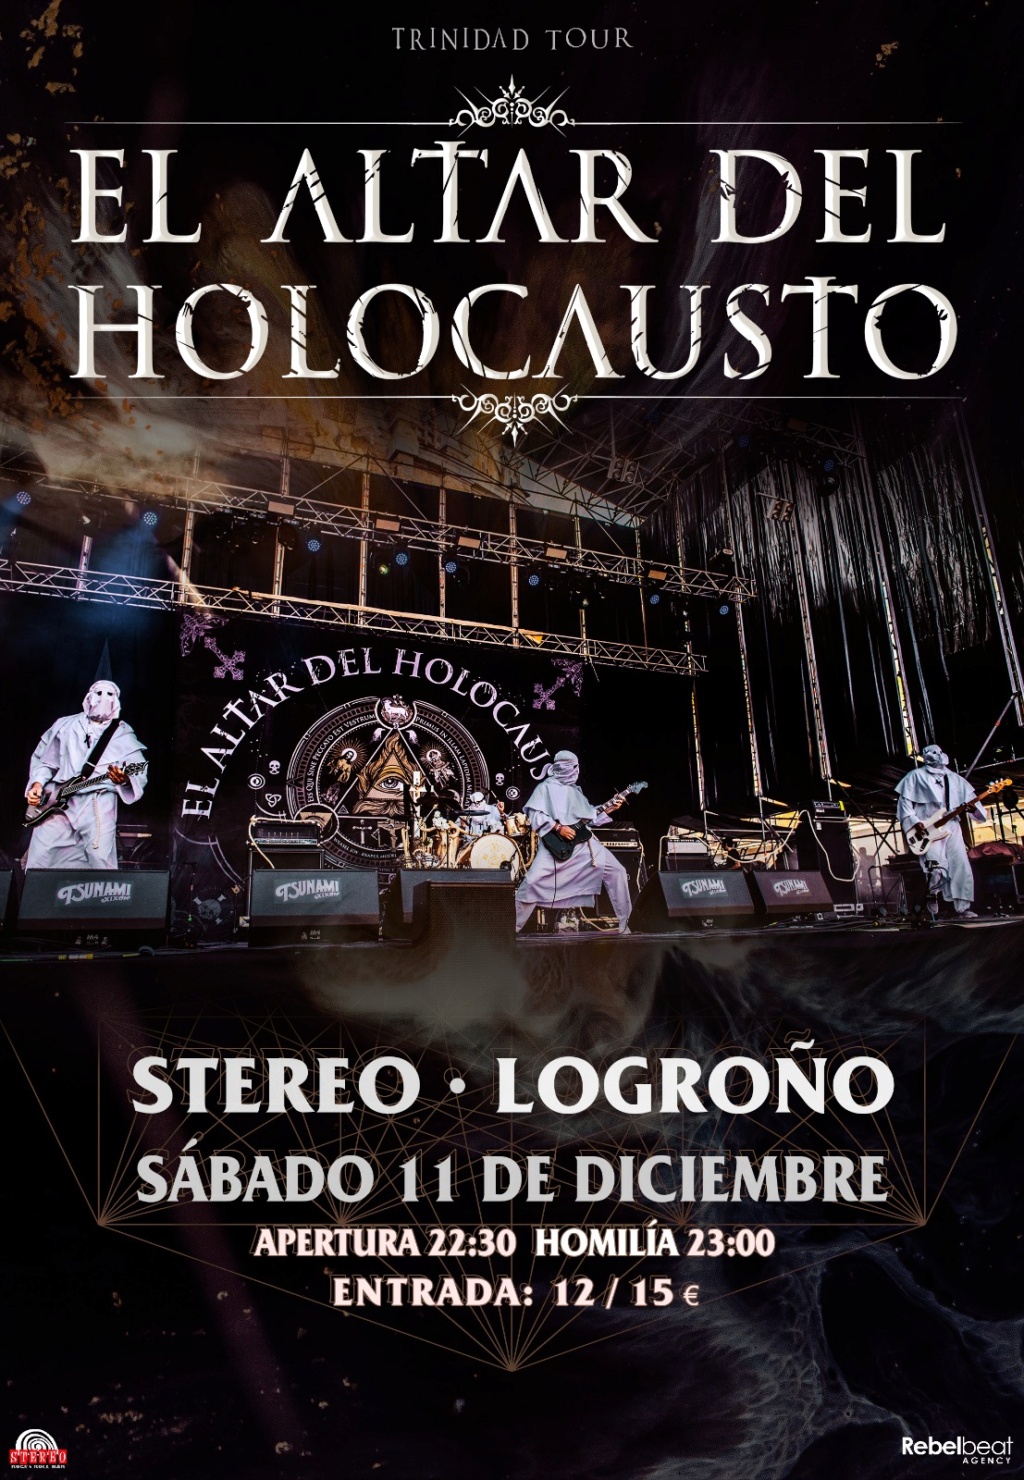 El Altar Del Holocausto: ¡¡¡Nuevas fechas para presentar ✞ T R I N I DAD !!!!! ( Villava 27 mayo - Zaragoza - 28 mayo) - Página 18 Logroz10